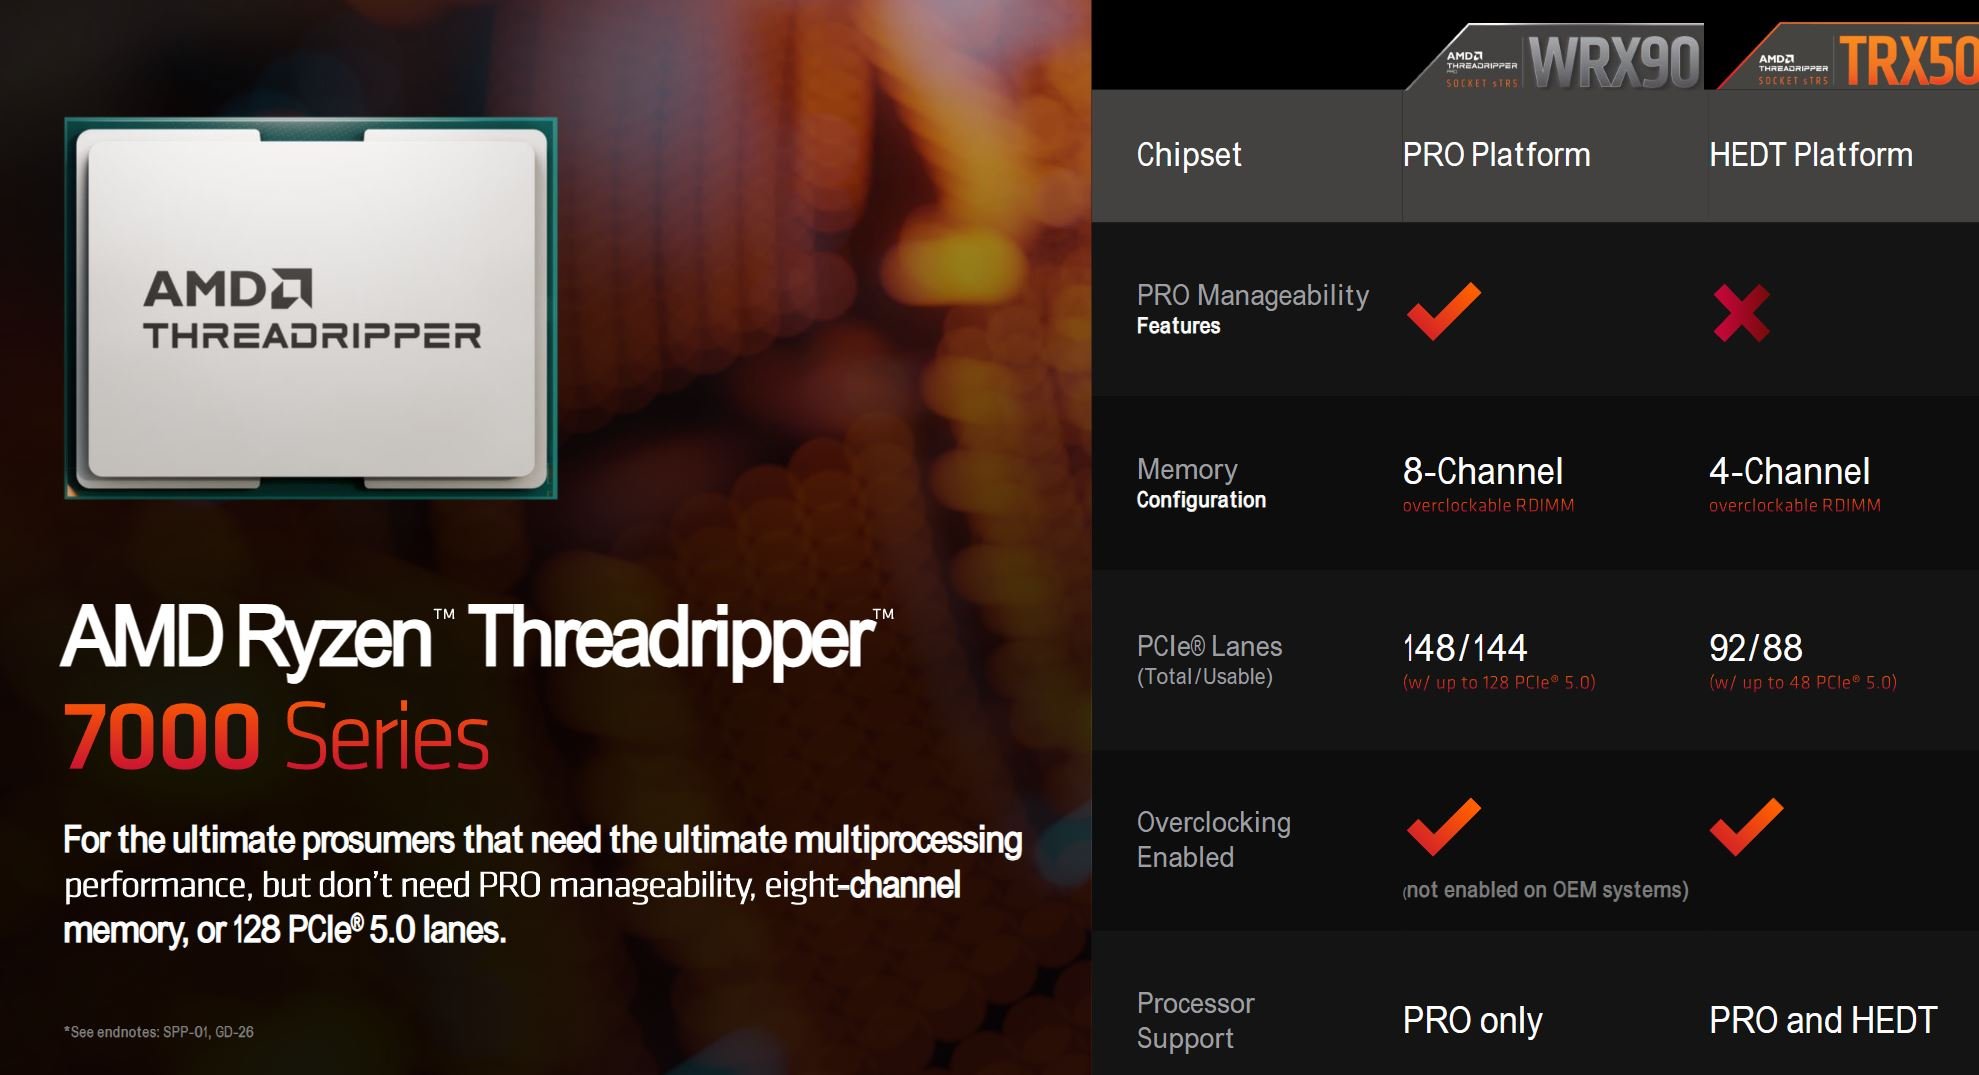 AMD Ryzen Threadripper 7000 Series platform comparison slide.